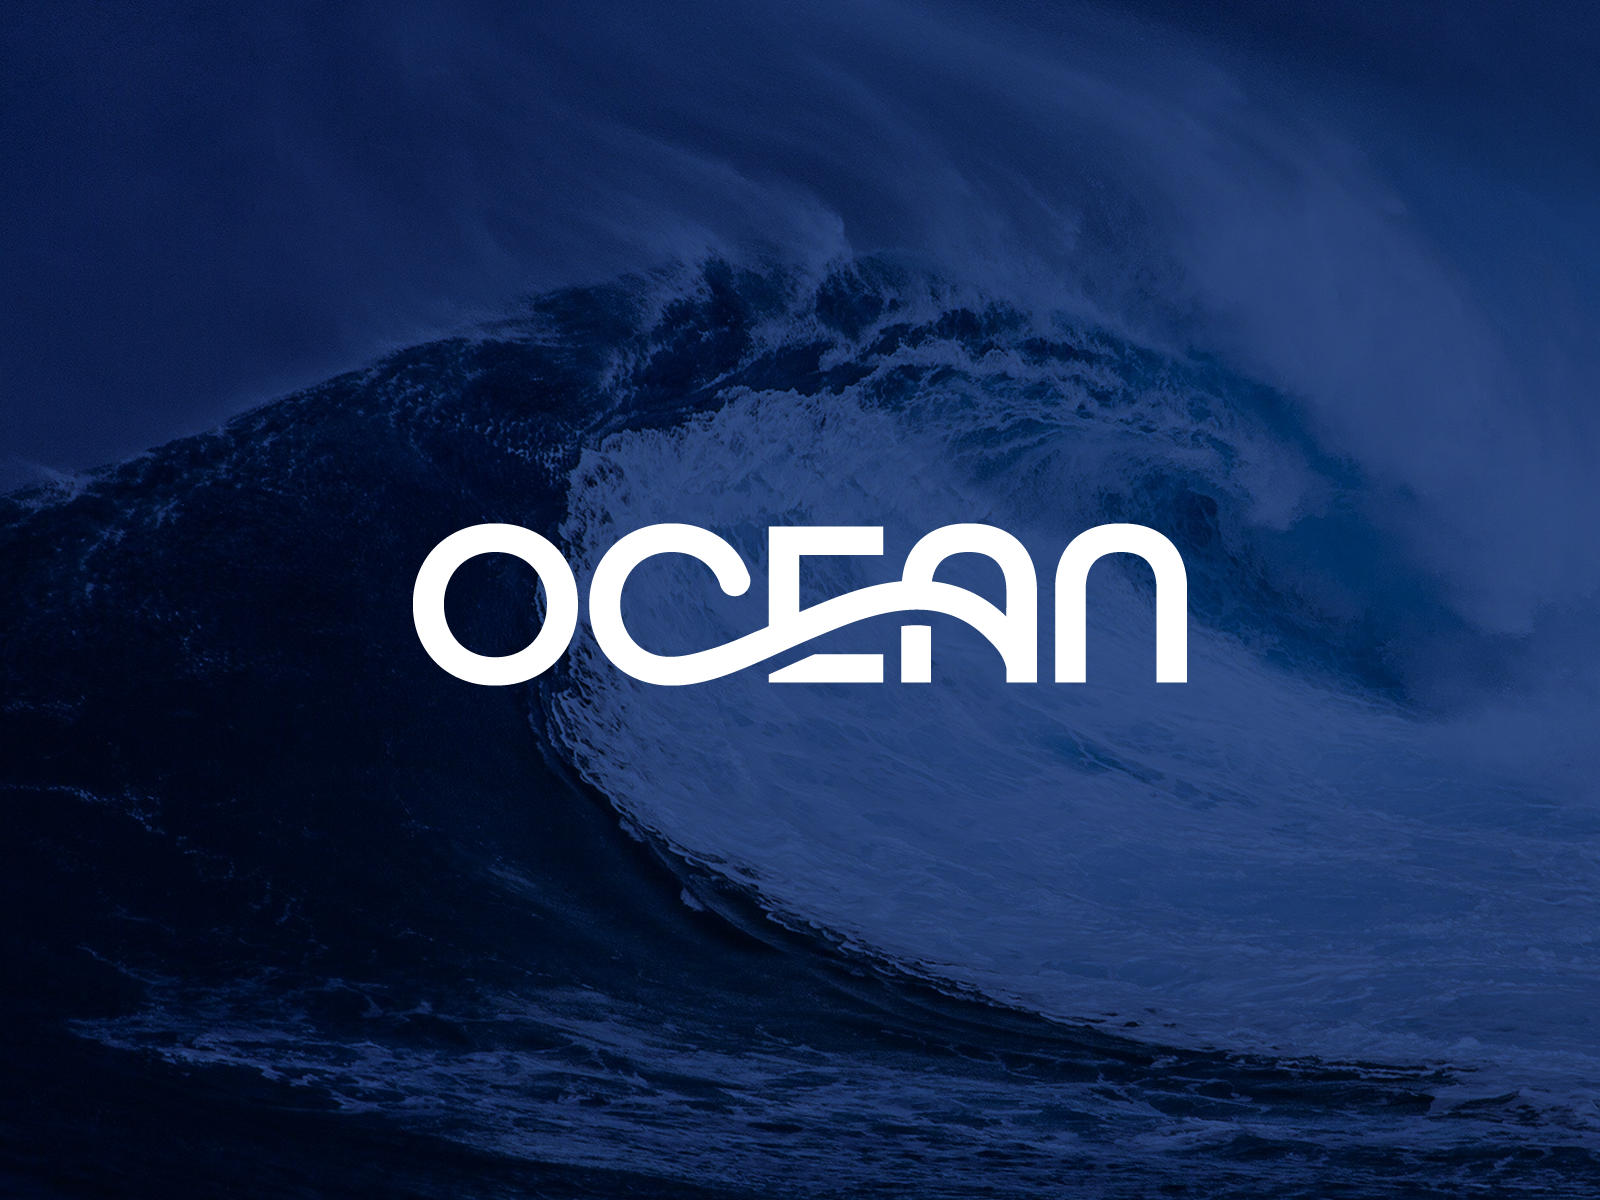 Ocean & Sea Free Vector Graphics | Everypixel